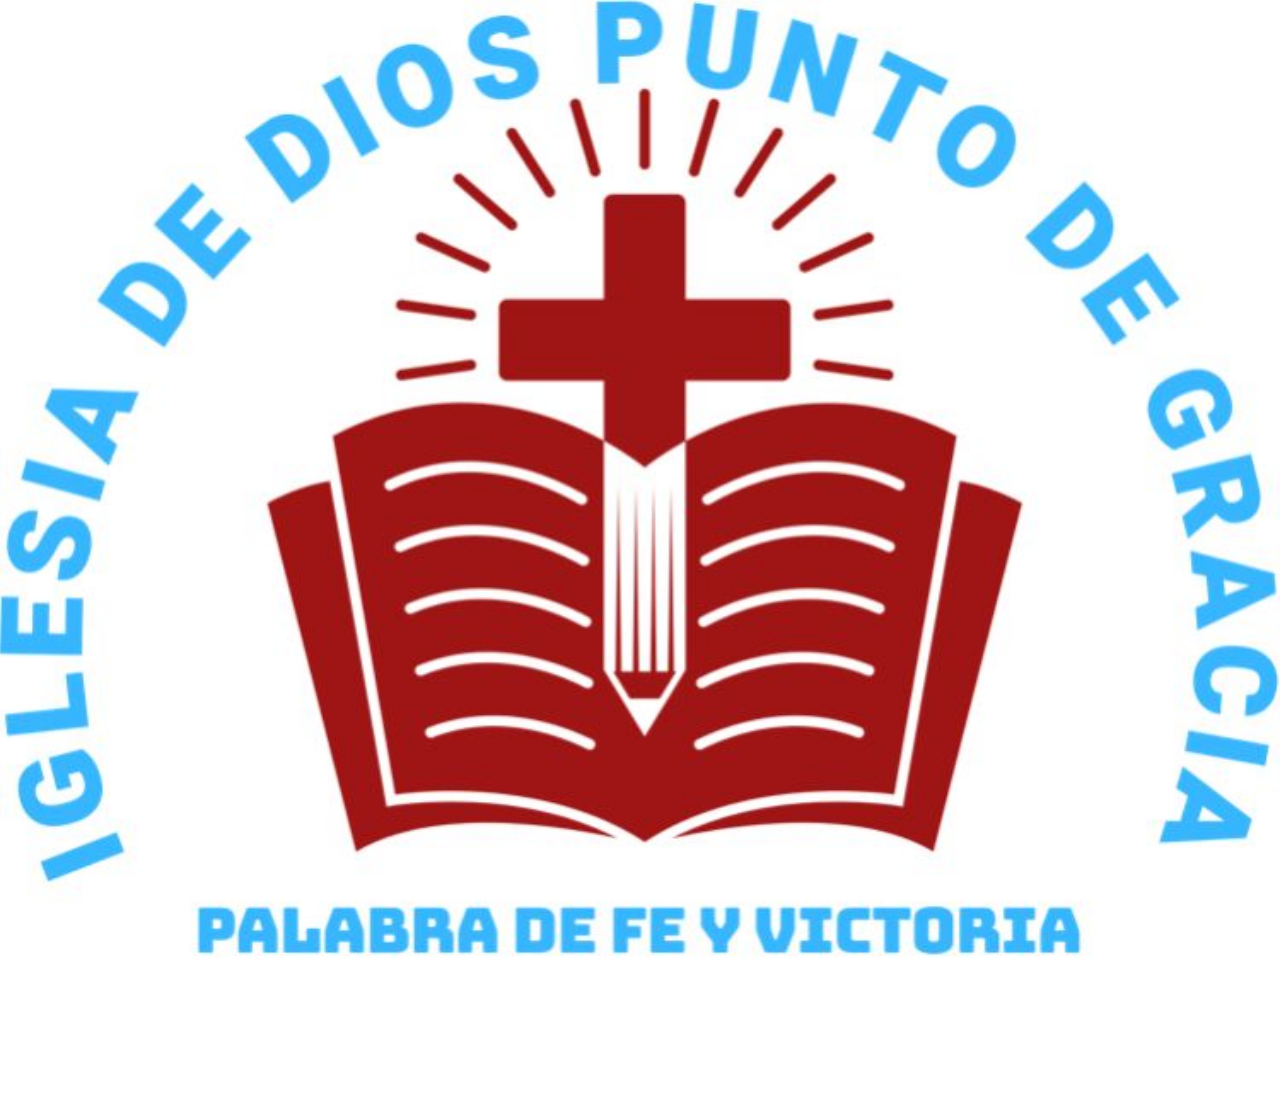 Iglesia de Dios Punto de Gracia Palabra de Fe y Victoria's web page